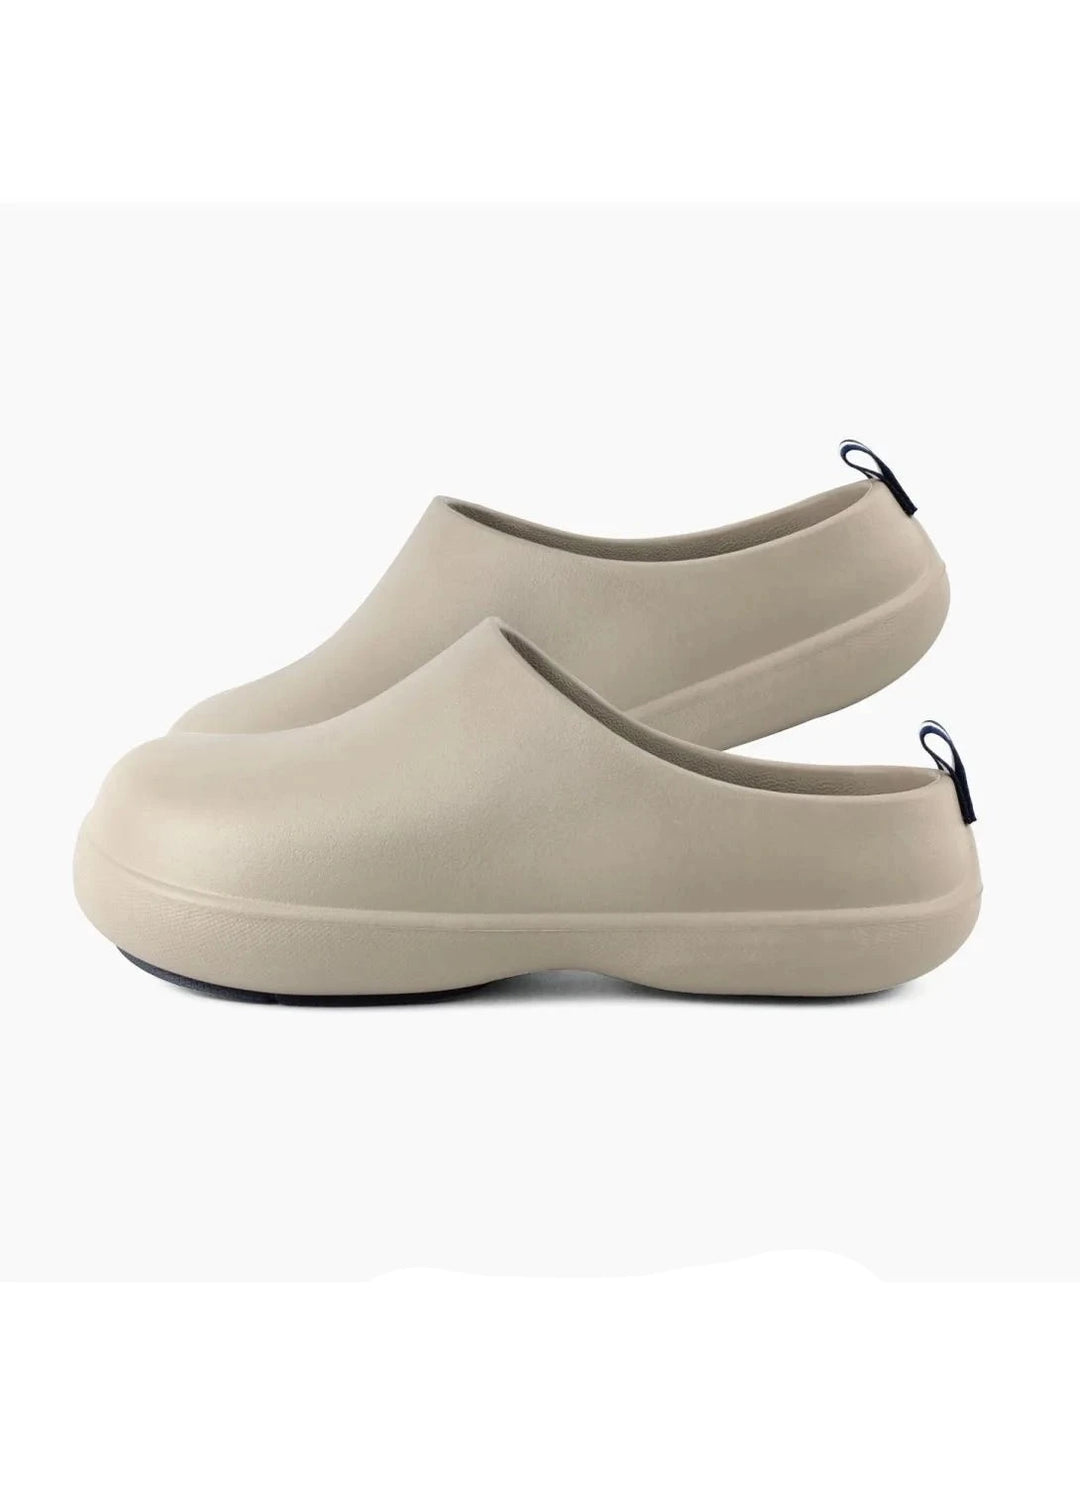 Super Soft EVA Slippers